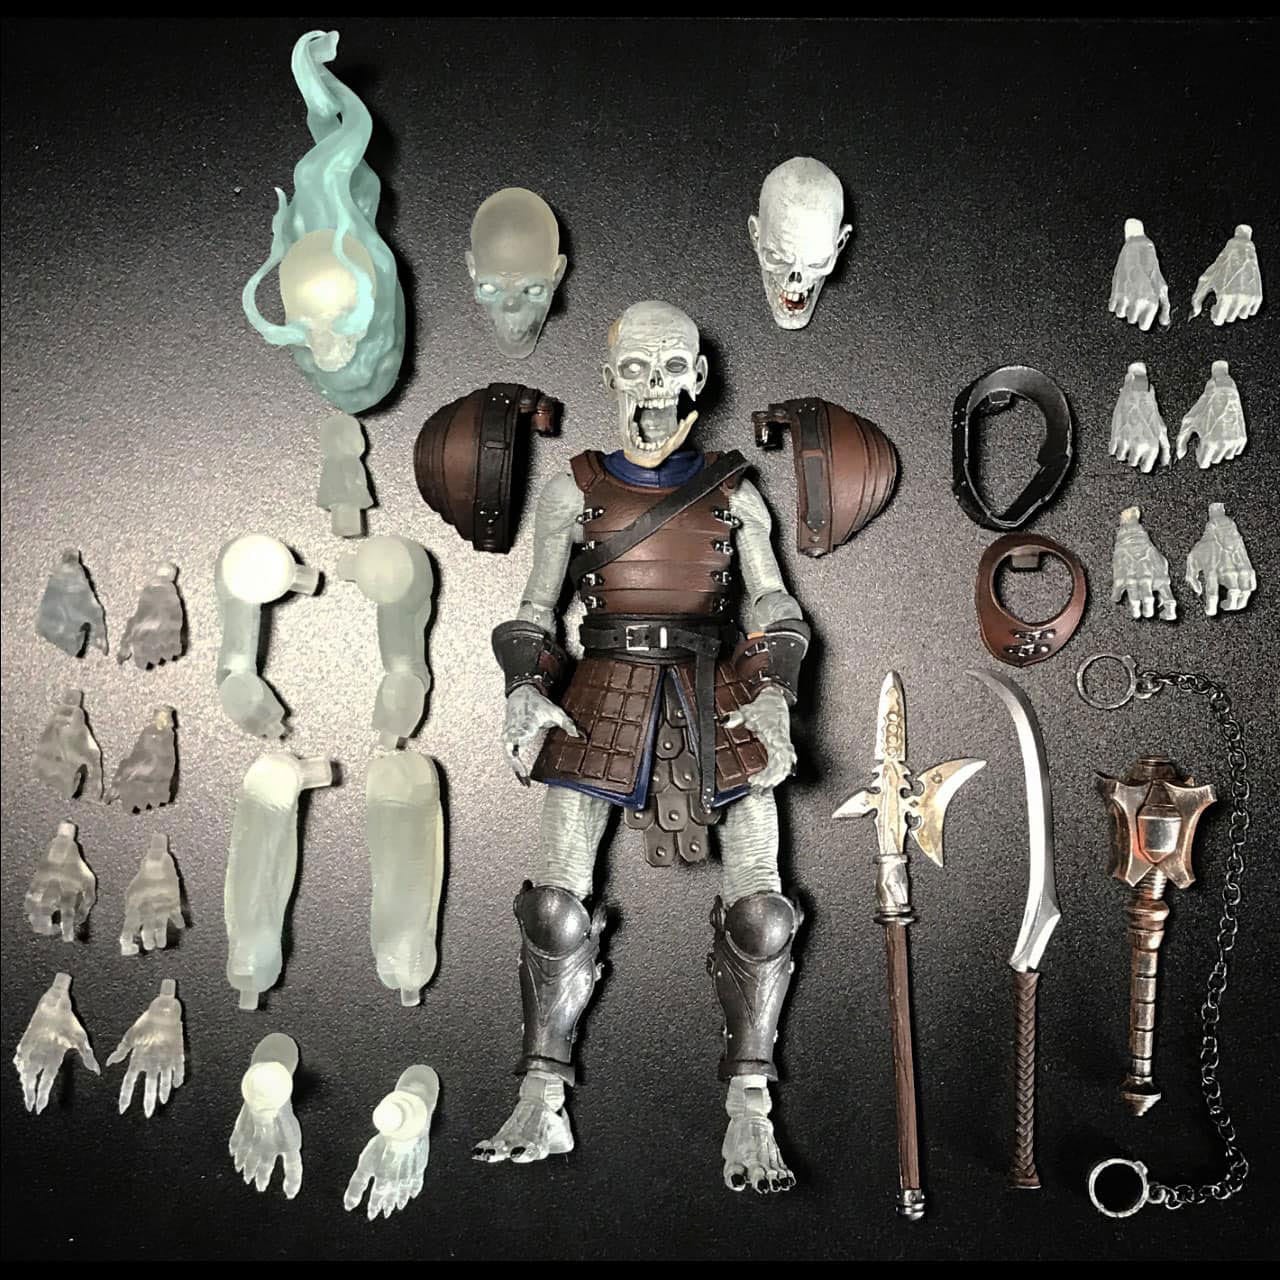 Mythic Legions: Necronominus - Figurine Undead Builder Pack (Deluxe) 15 cm